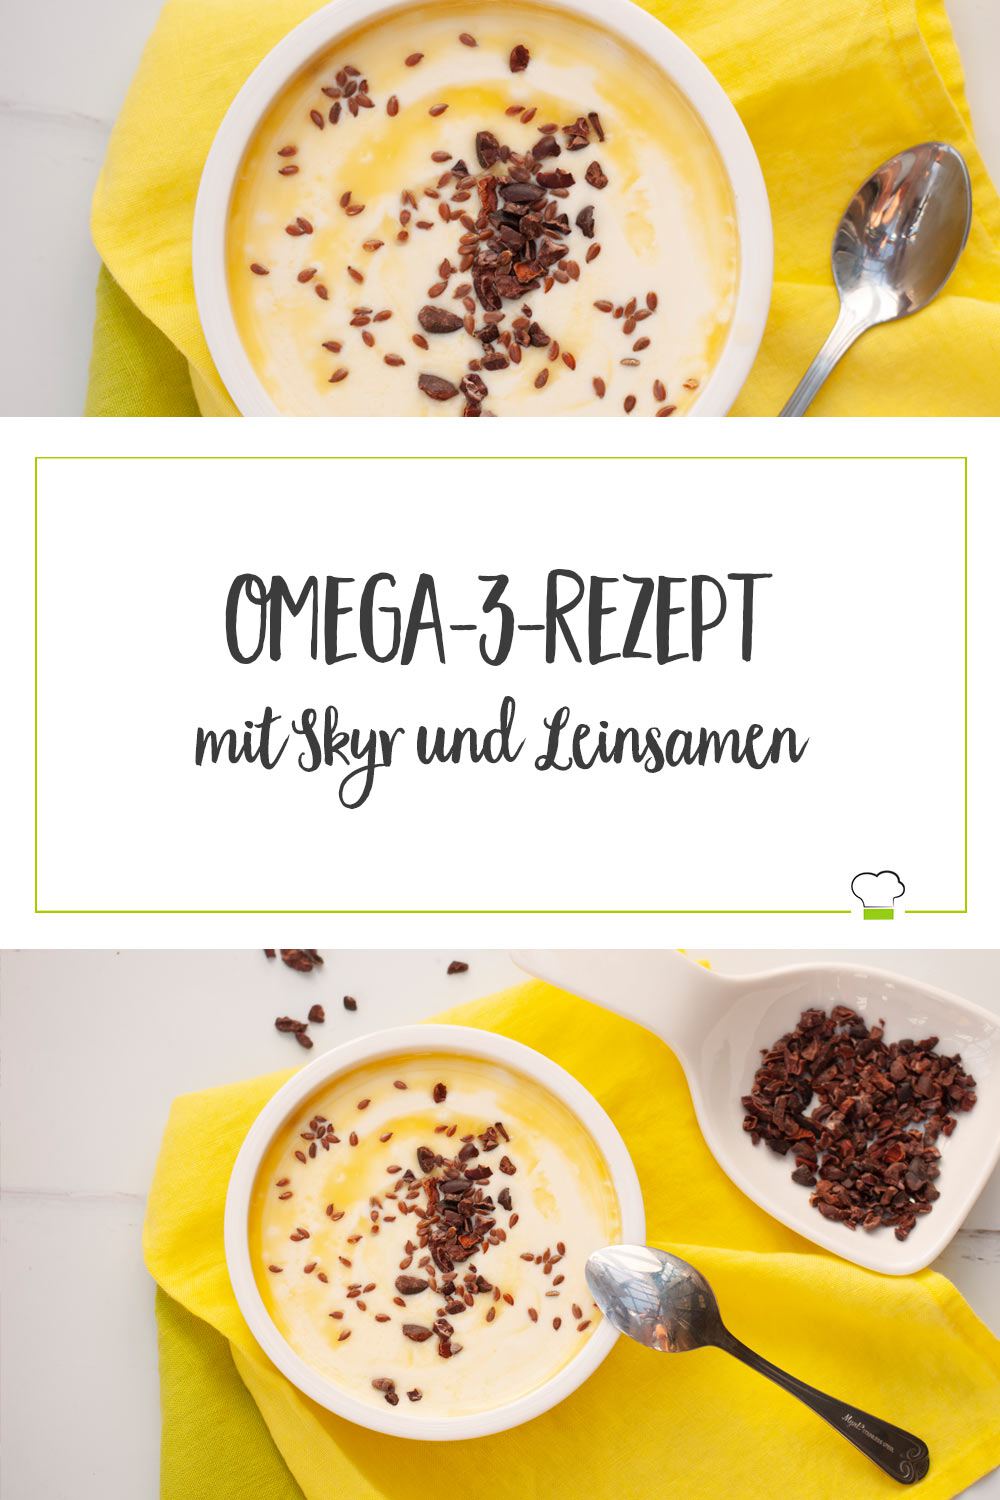 Omega 3 Rezept Skyr Leinsamen